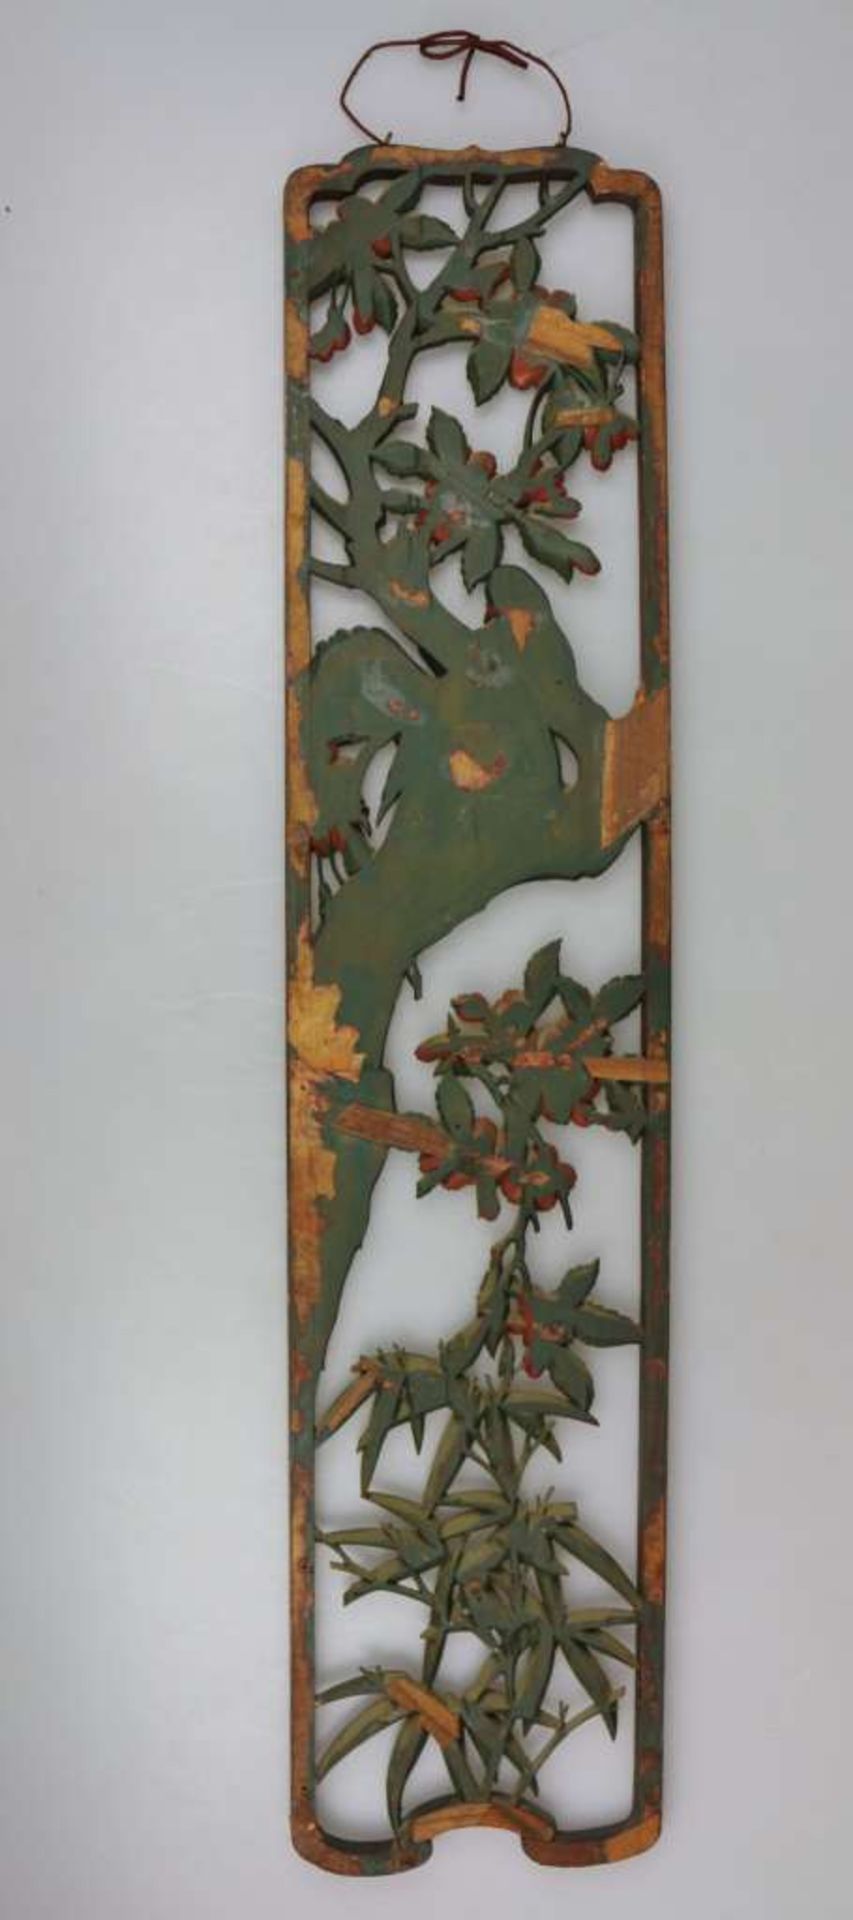 Hochrechteckiges Reliefbild, Asien, Holz, gefasst, Kirschblüten und Vogeldekor. H. 97 cm. Alters- - Image 3 of 3